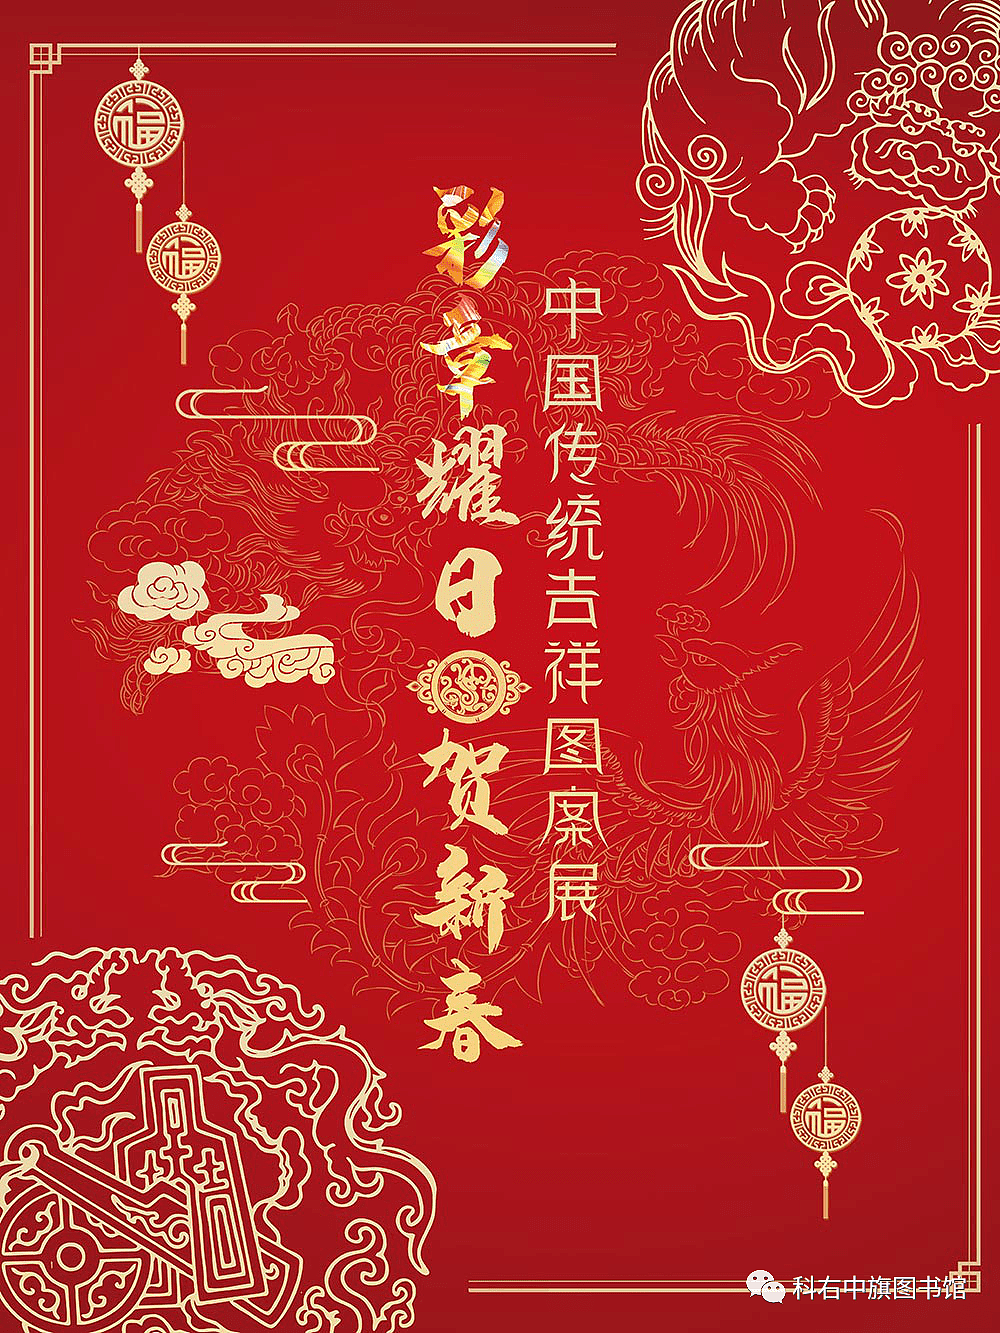 科尔沁右翼中旗图书馆线上展览丨彩章耀日贺新春——中国传统吉祥图案展 - 2